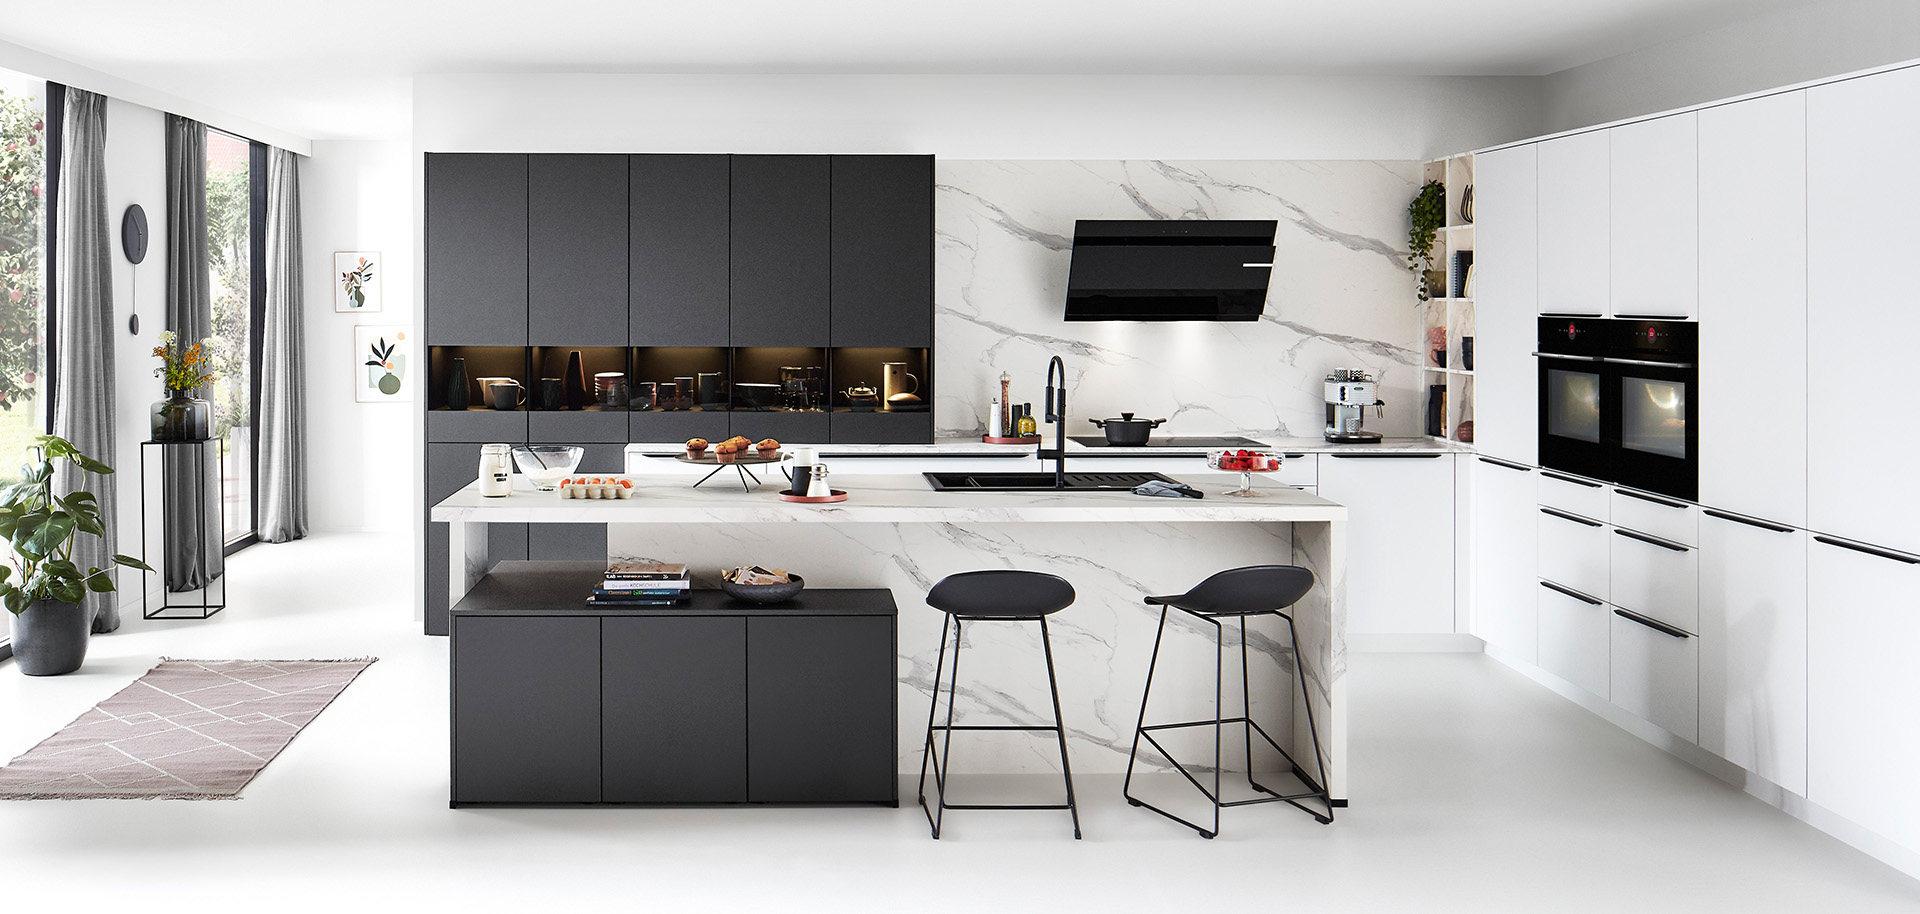 Cocina moderna con líneas limpias que muestra gabinetes blancos, acentos negros, salpicadero de mármol, electrodomésticos integrados y una isla central con asientos de taburete.